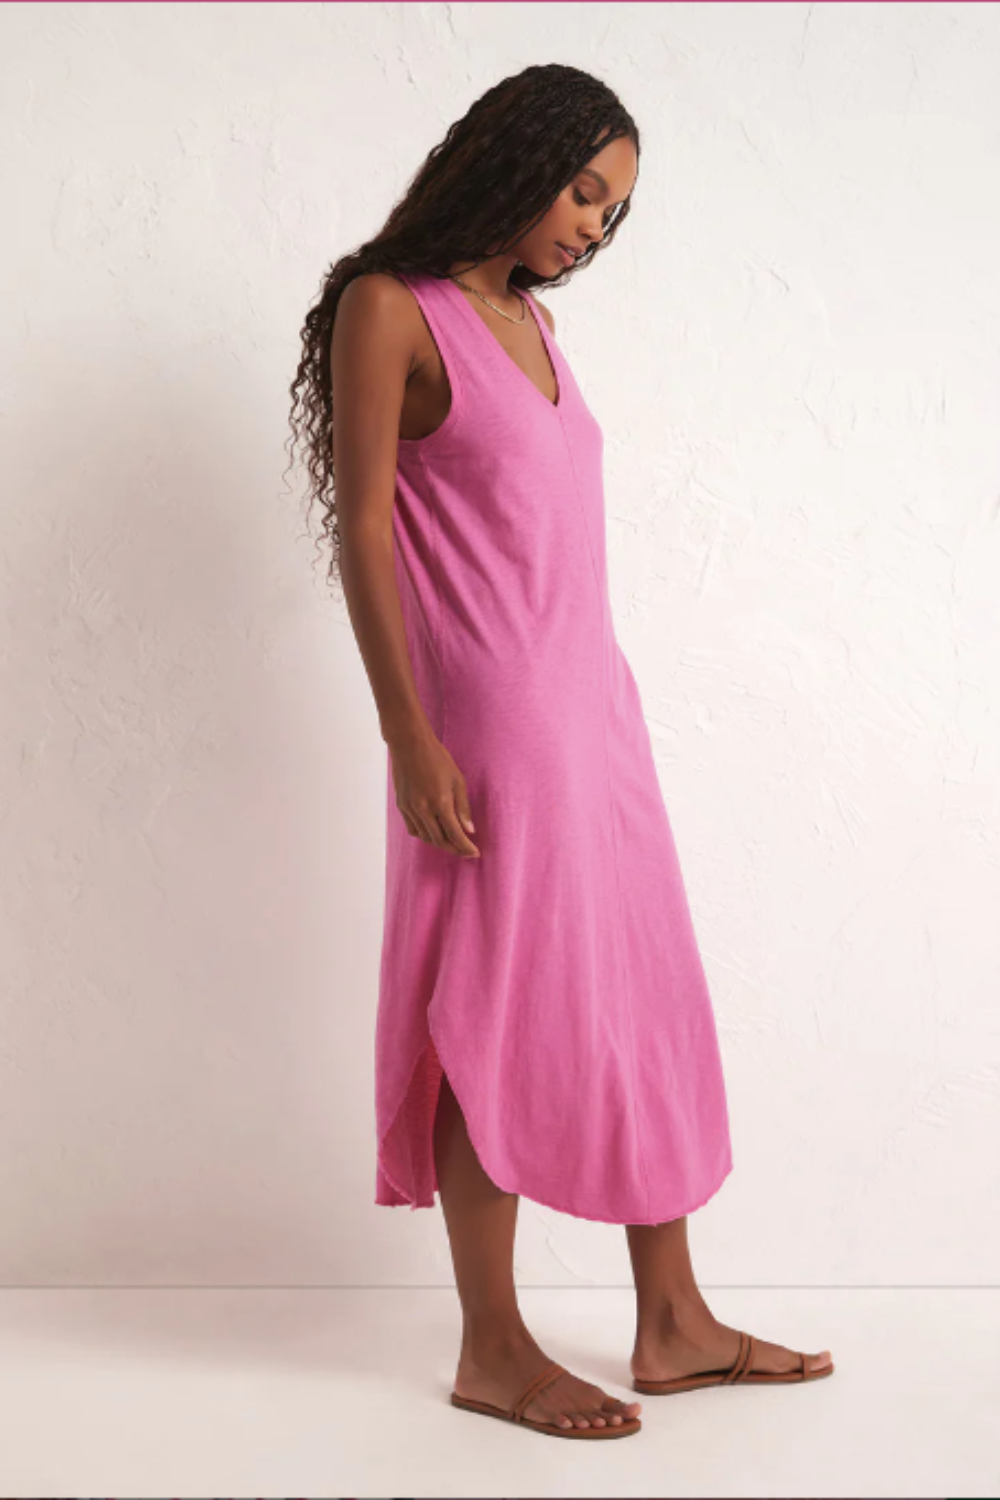 The Reverie Slub Dress in Heartbreaker Pink